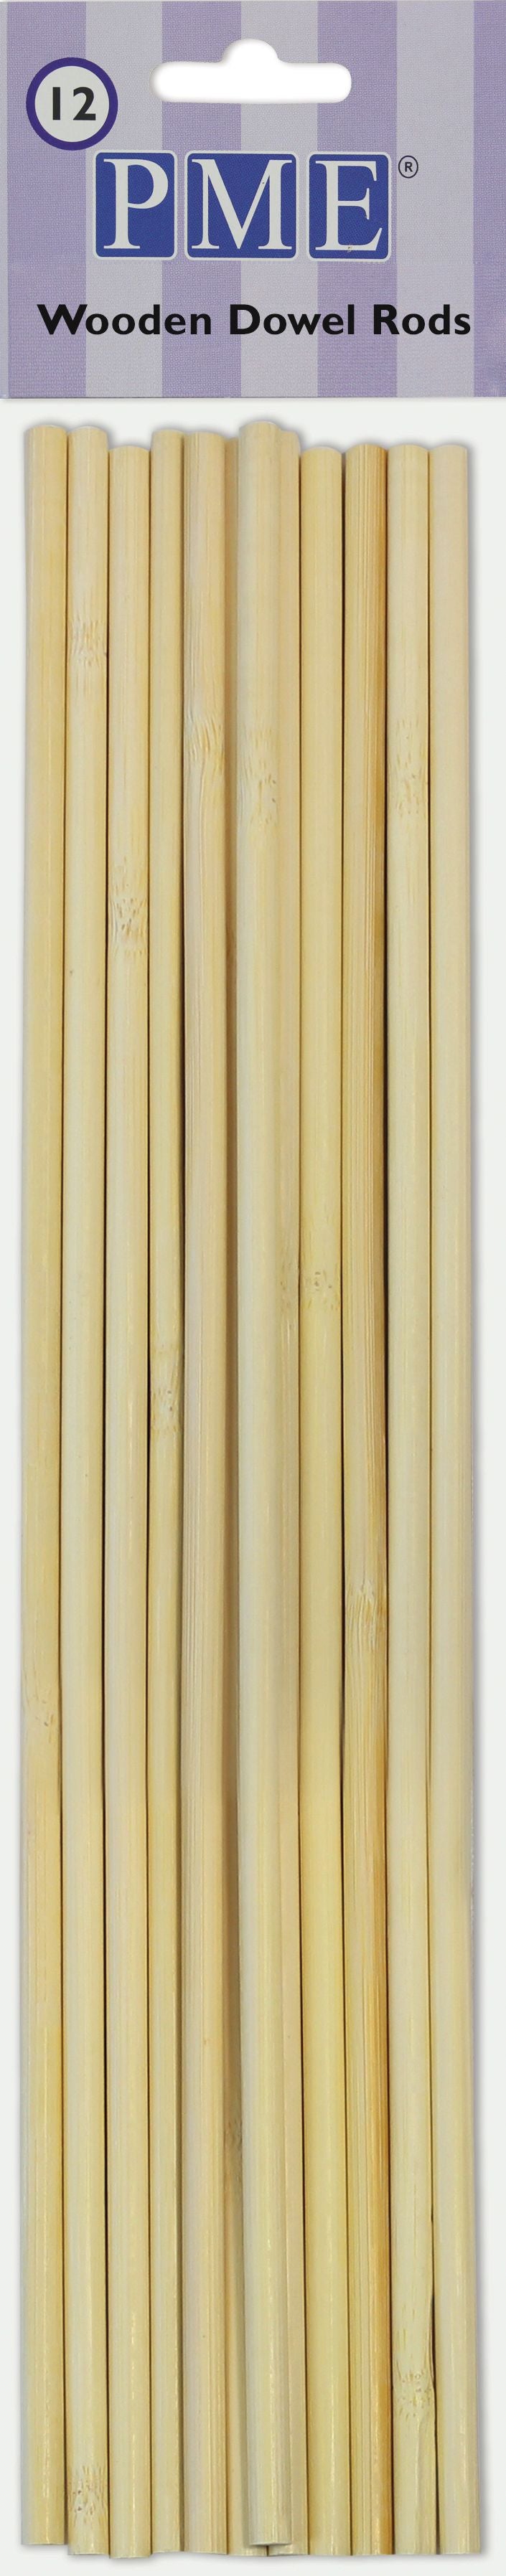 Dowel Rods - Wooden Pk/12 (30cm / 12”)